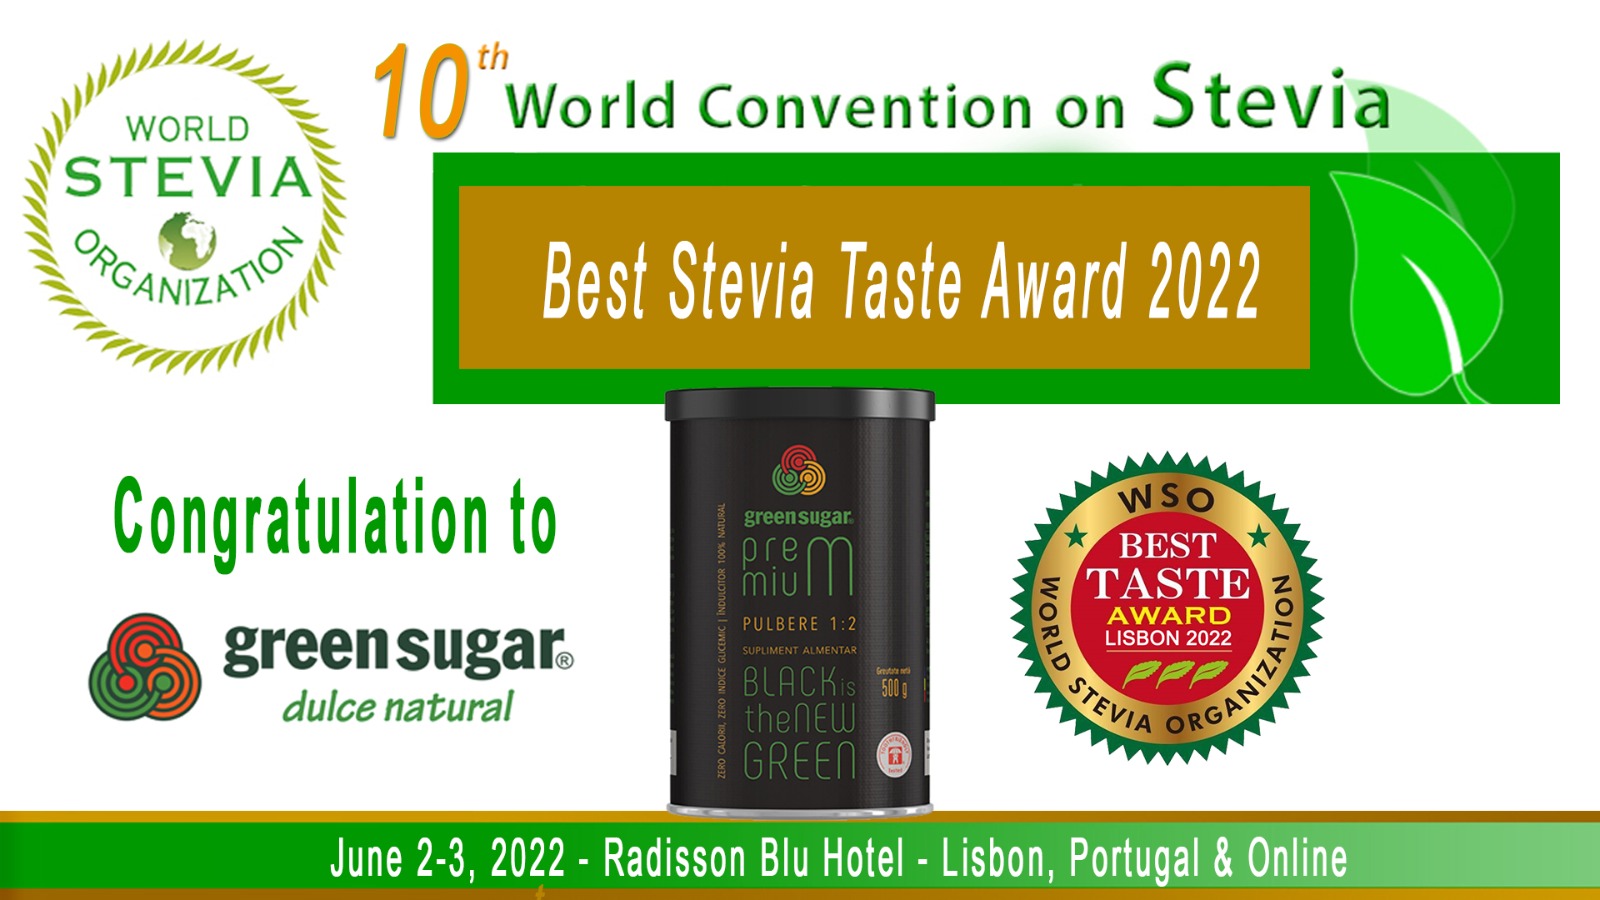 WSO Stevia Best Taste Awards 2022